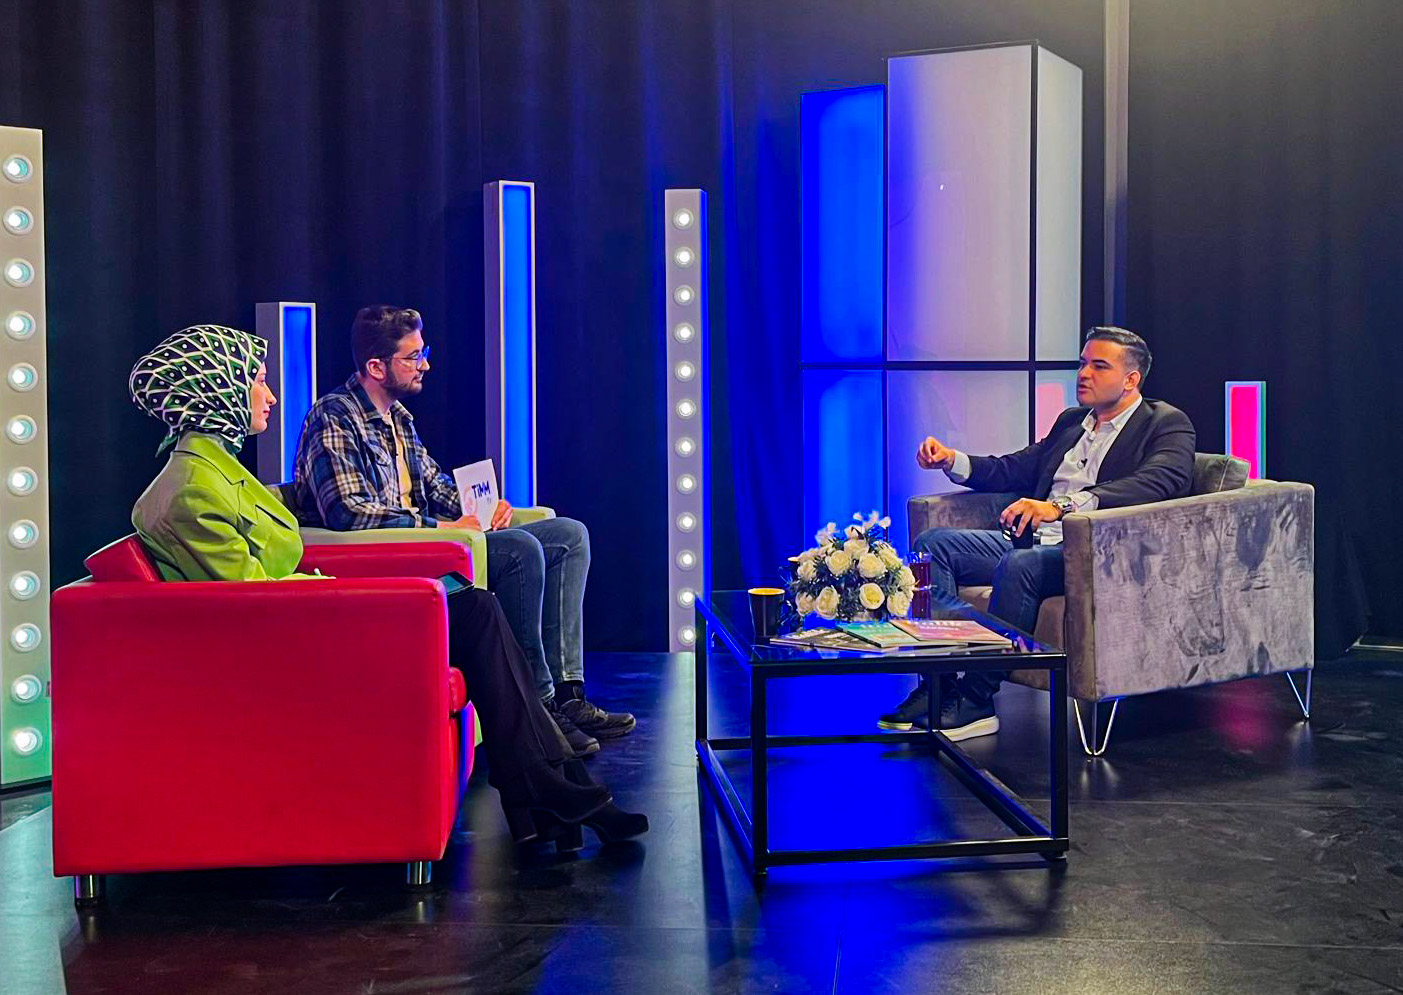 Spor Spikeri ve Habercisi İbrahim Demir TİMM TV’de